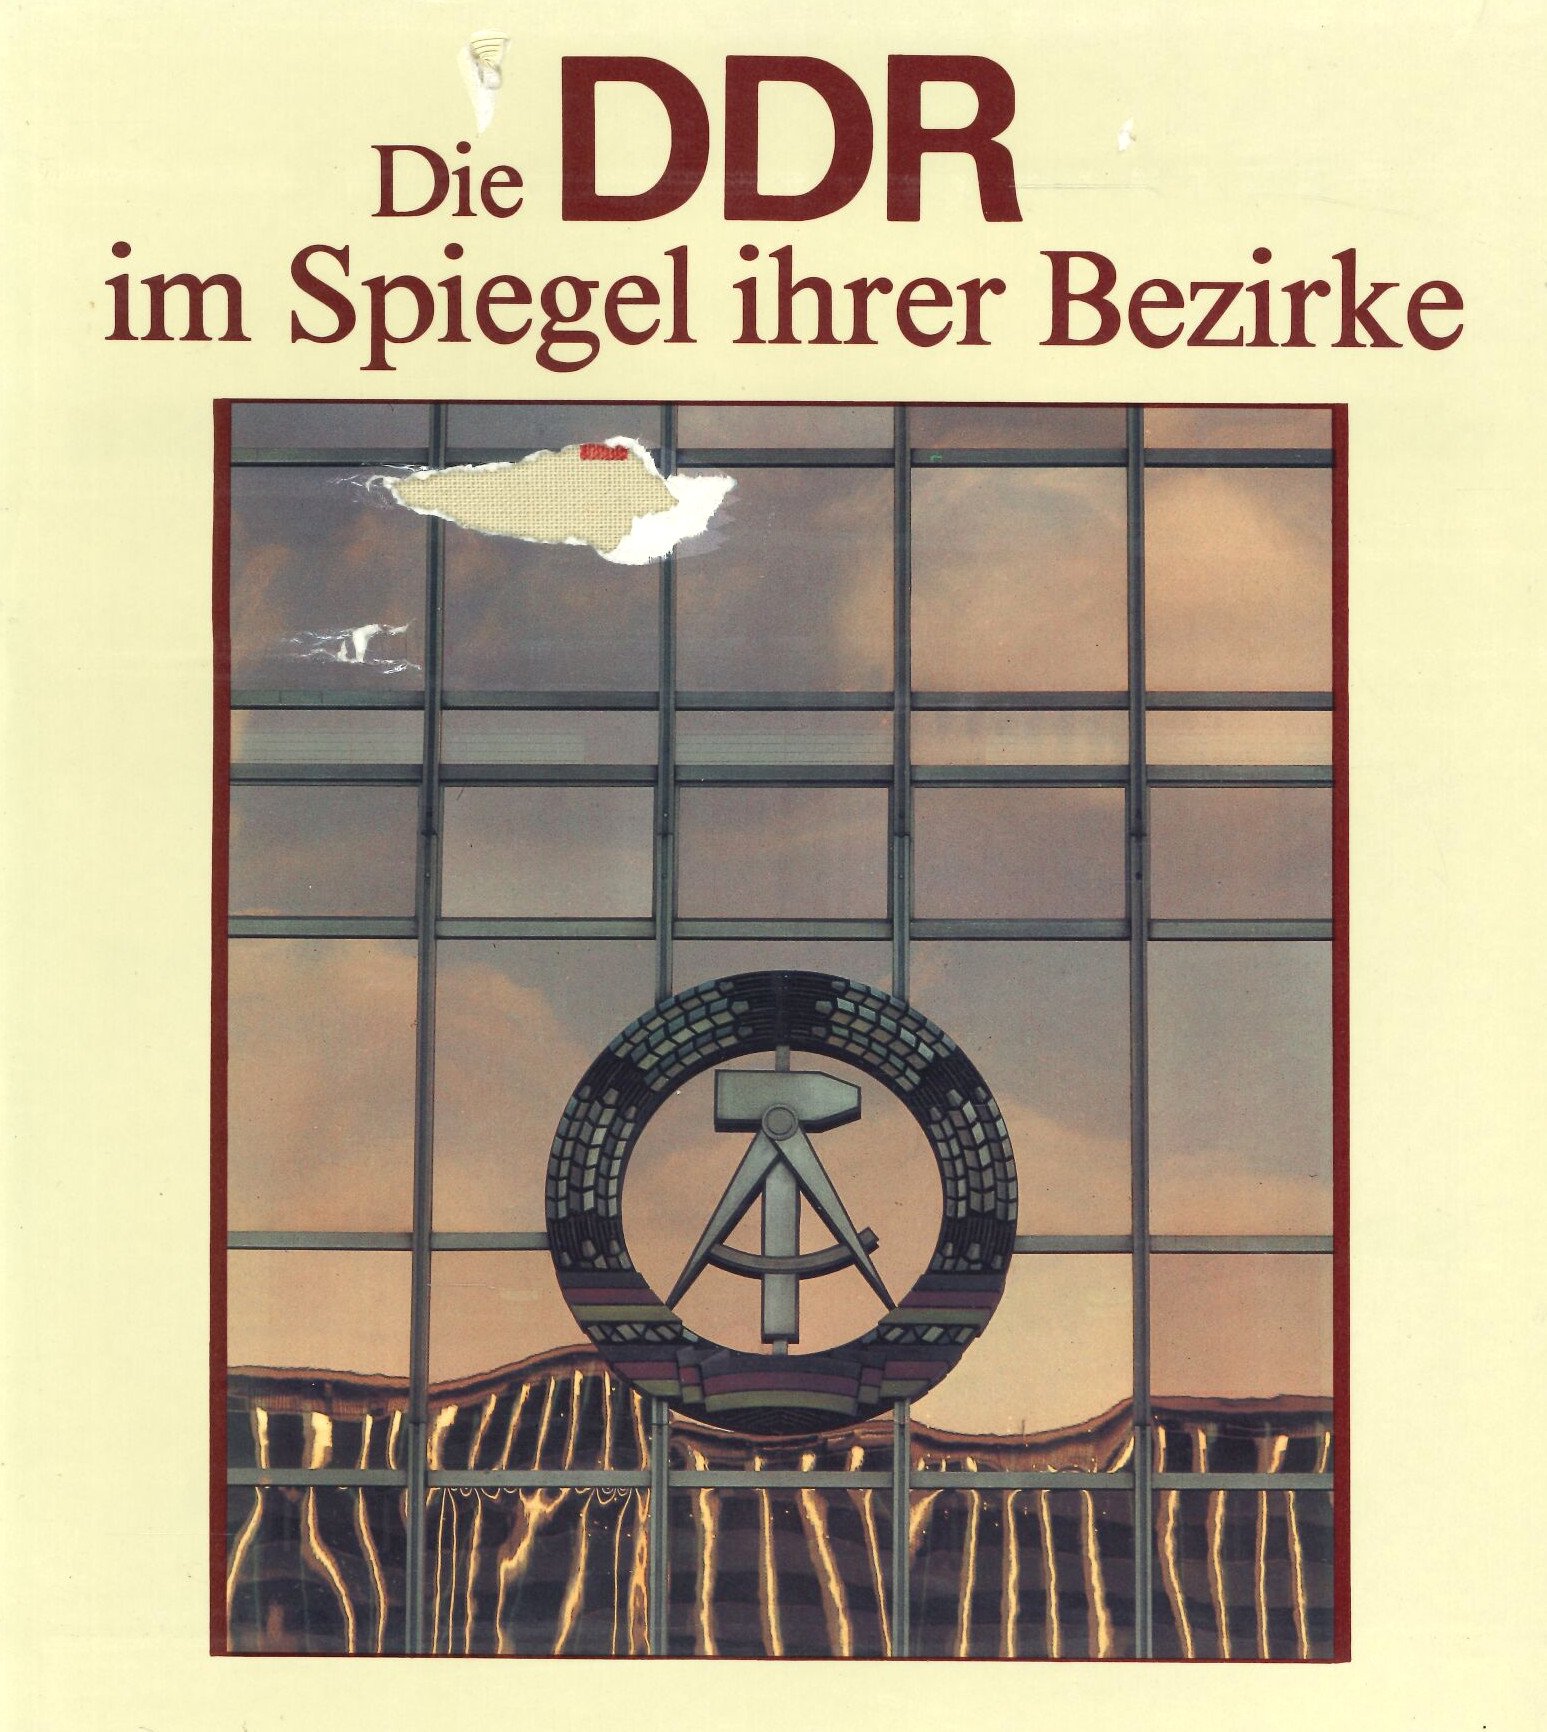 Die DDR im Spiegel ihrer Bezirke (Feuerwehrmuseum Grethen CC BY-NC-SA)